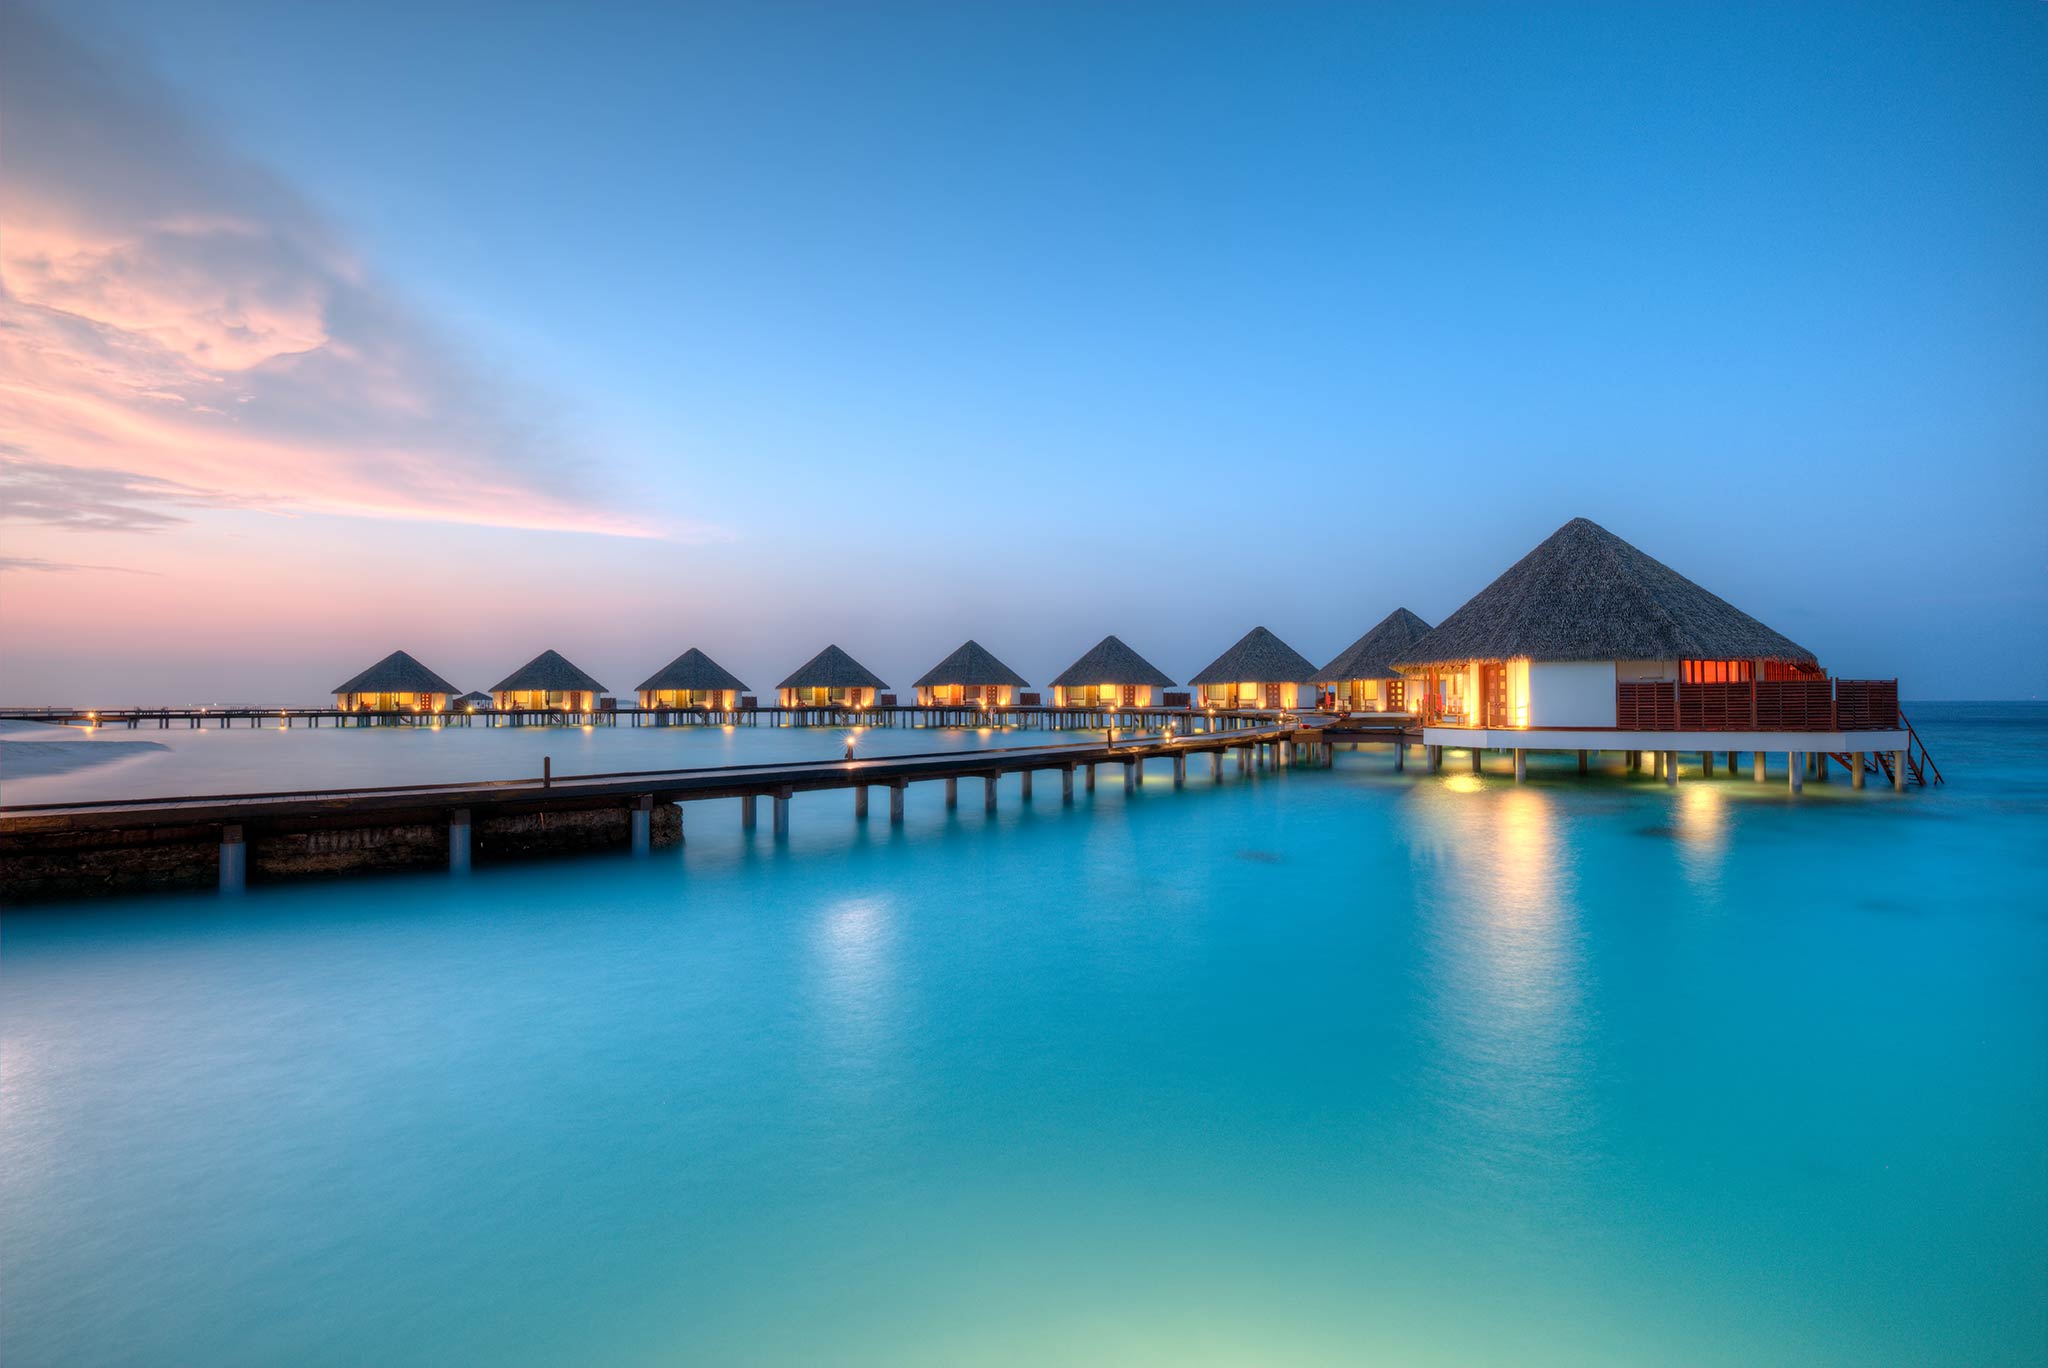 Water Villas on Maldives Resort